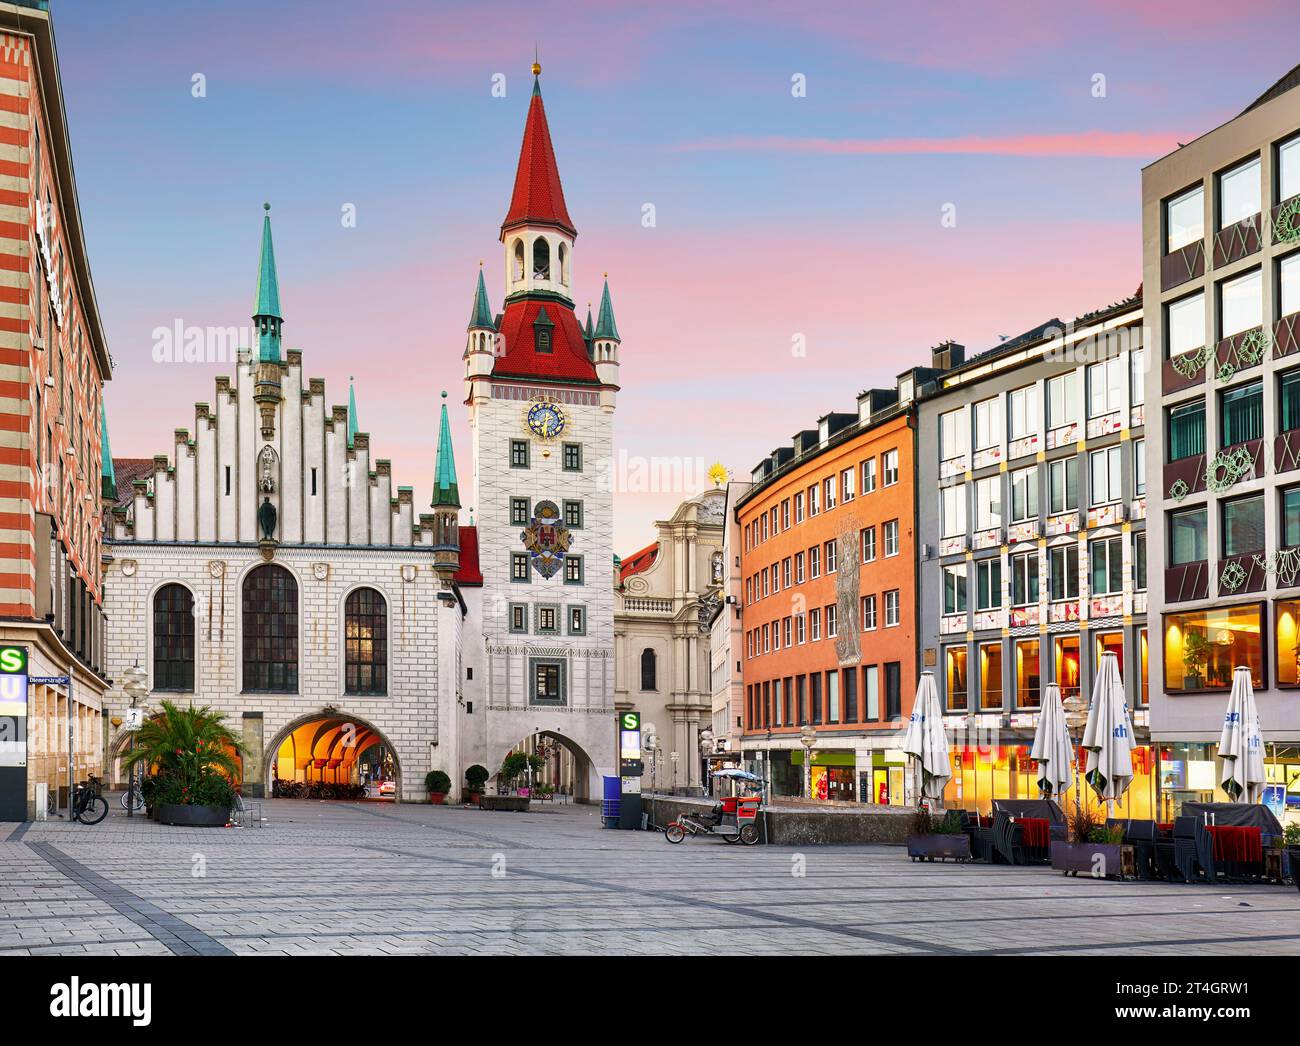 Munich - Allemagne, Marienplatz au lever du soleil dramatique avec des nuages rouges - personne Banque D'Images